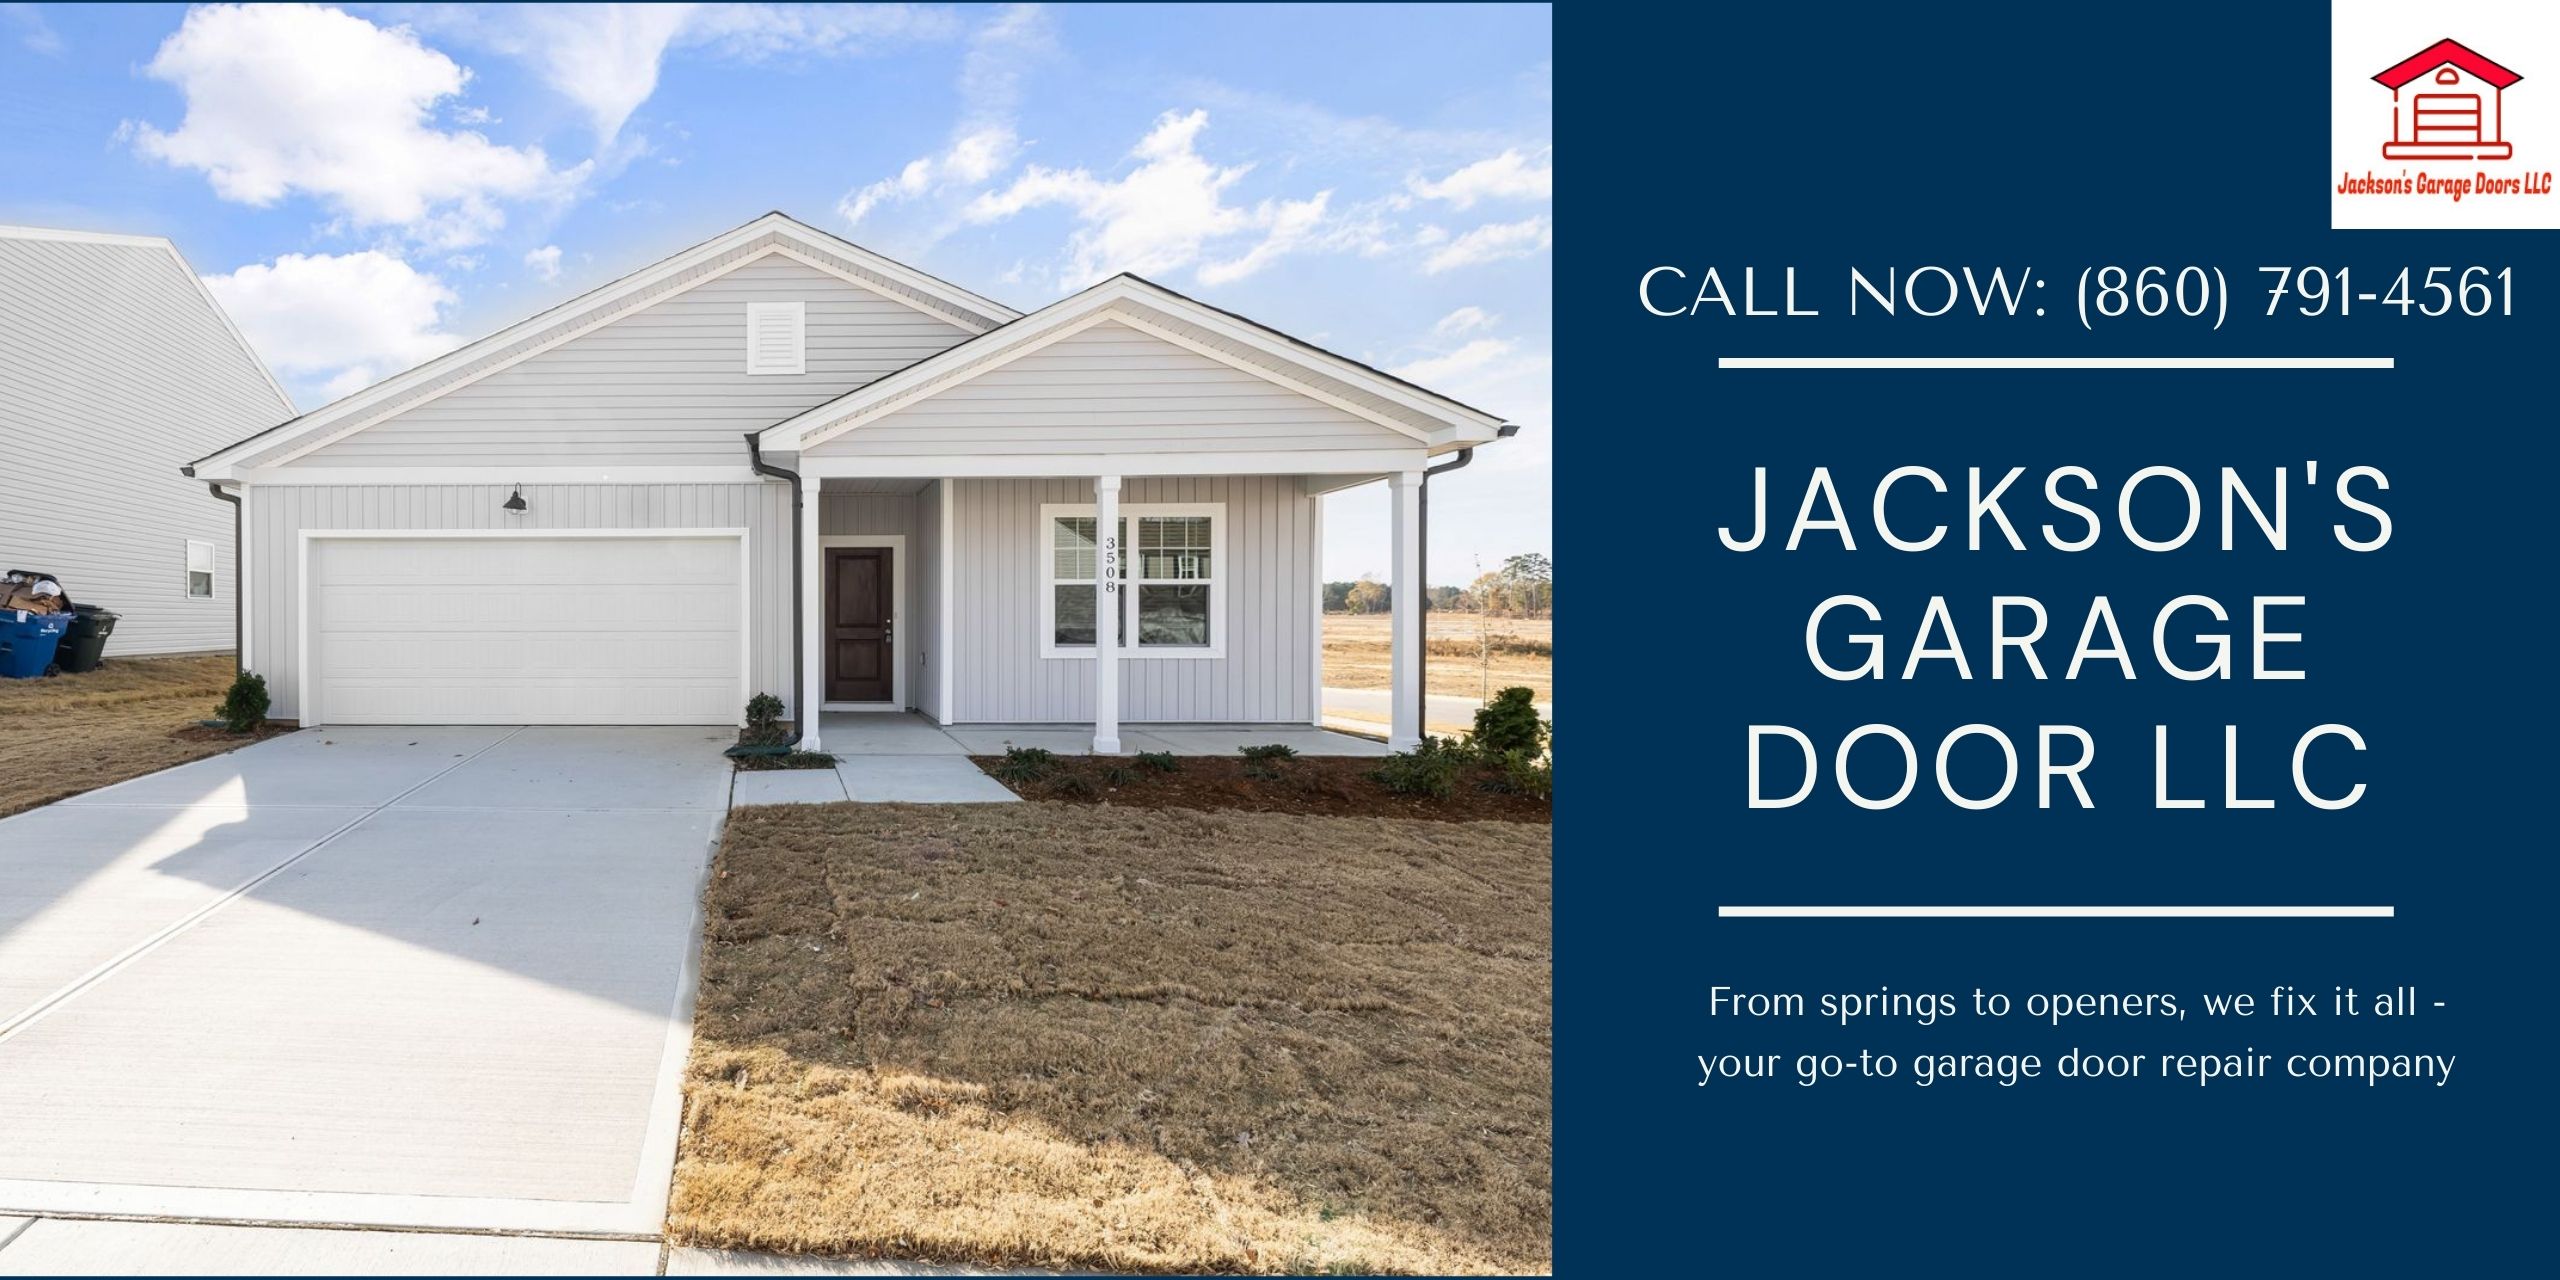 Jackson's Garage Door LLC